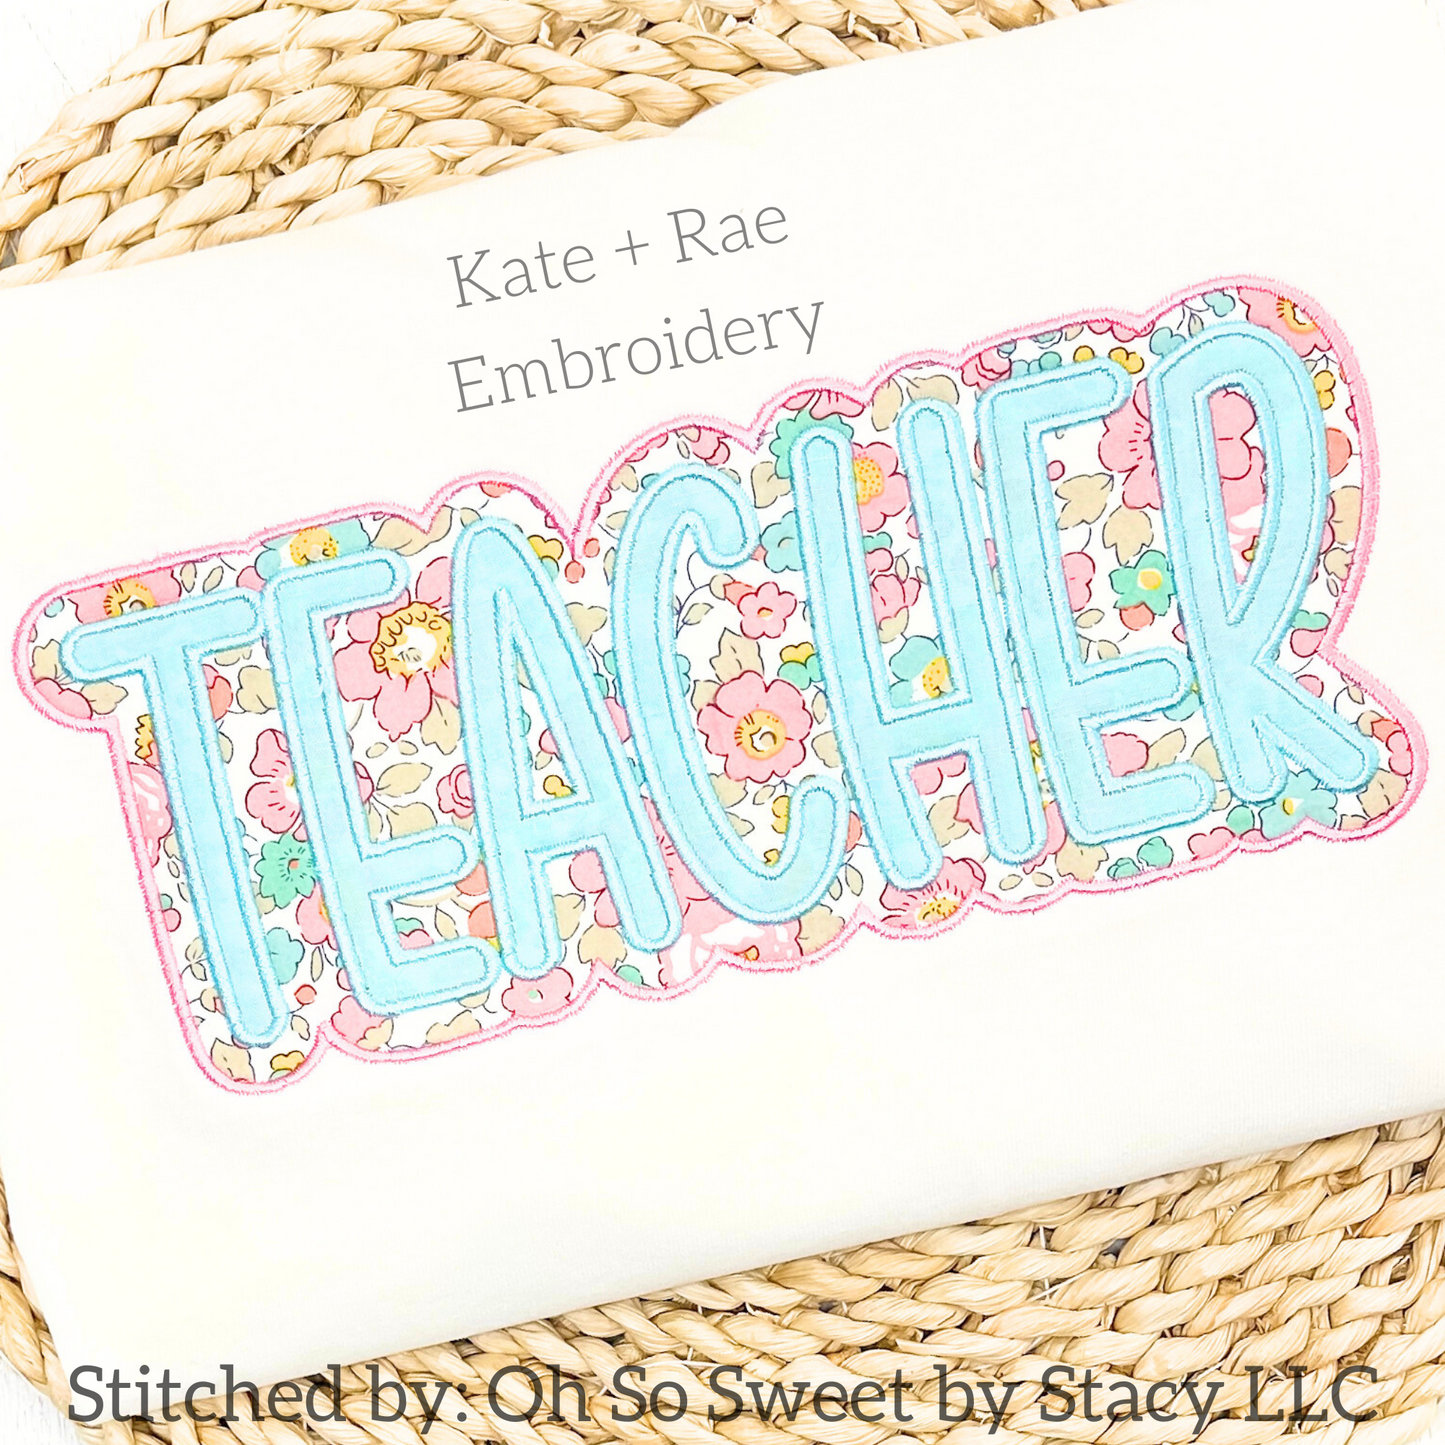 Teacher Double Satin Stitch Applique